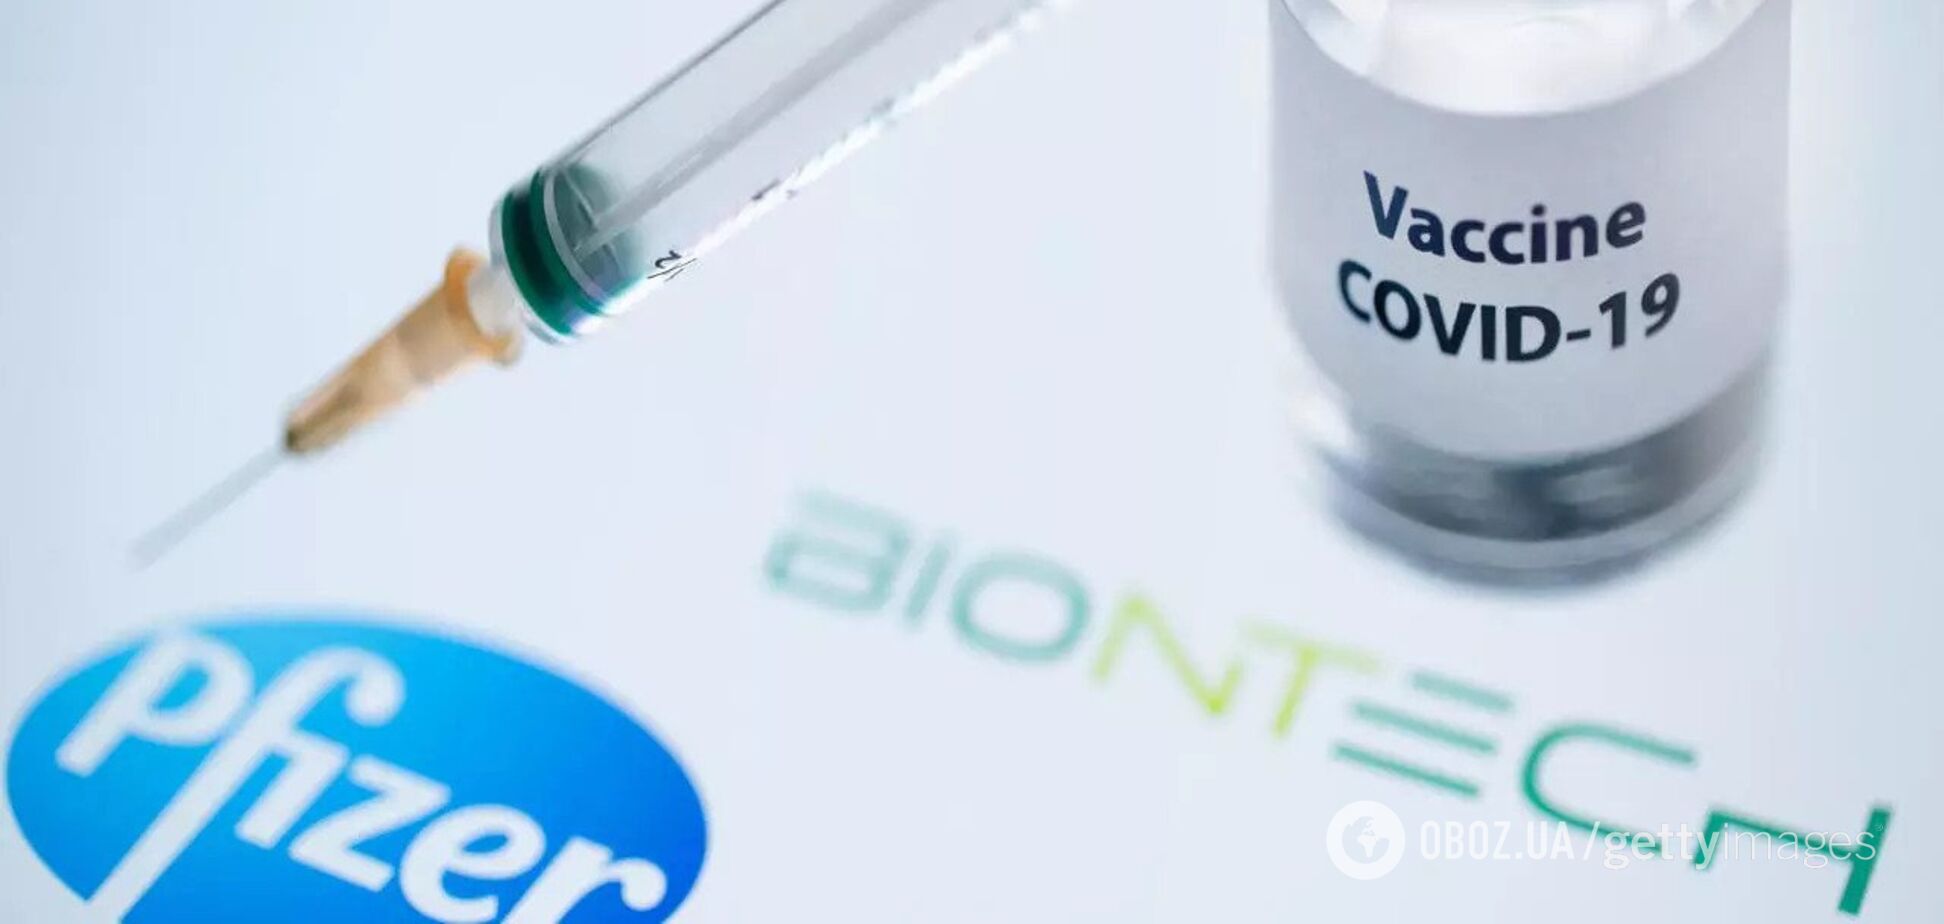 Эффективность вакцины Pfizer&BioNTech